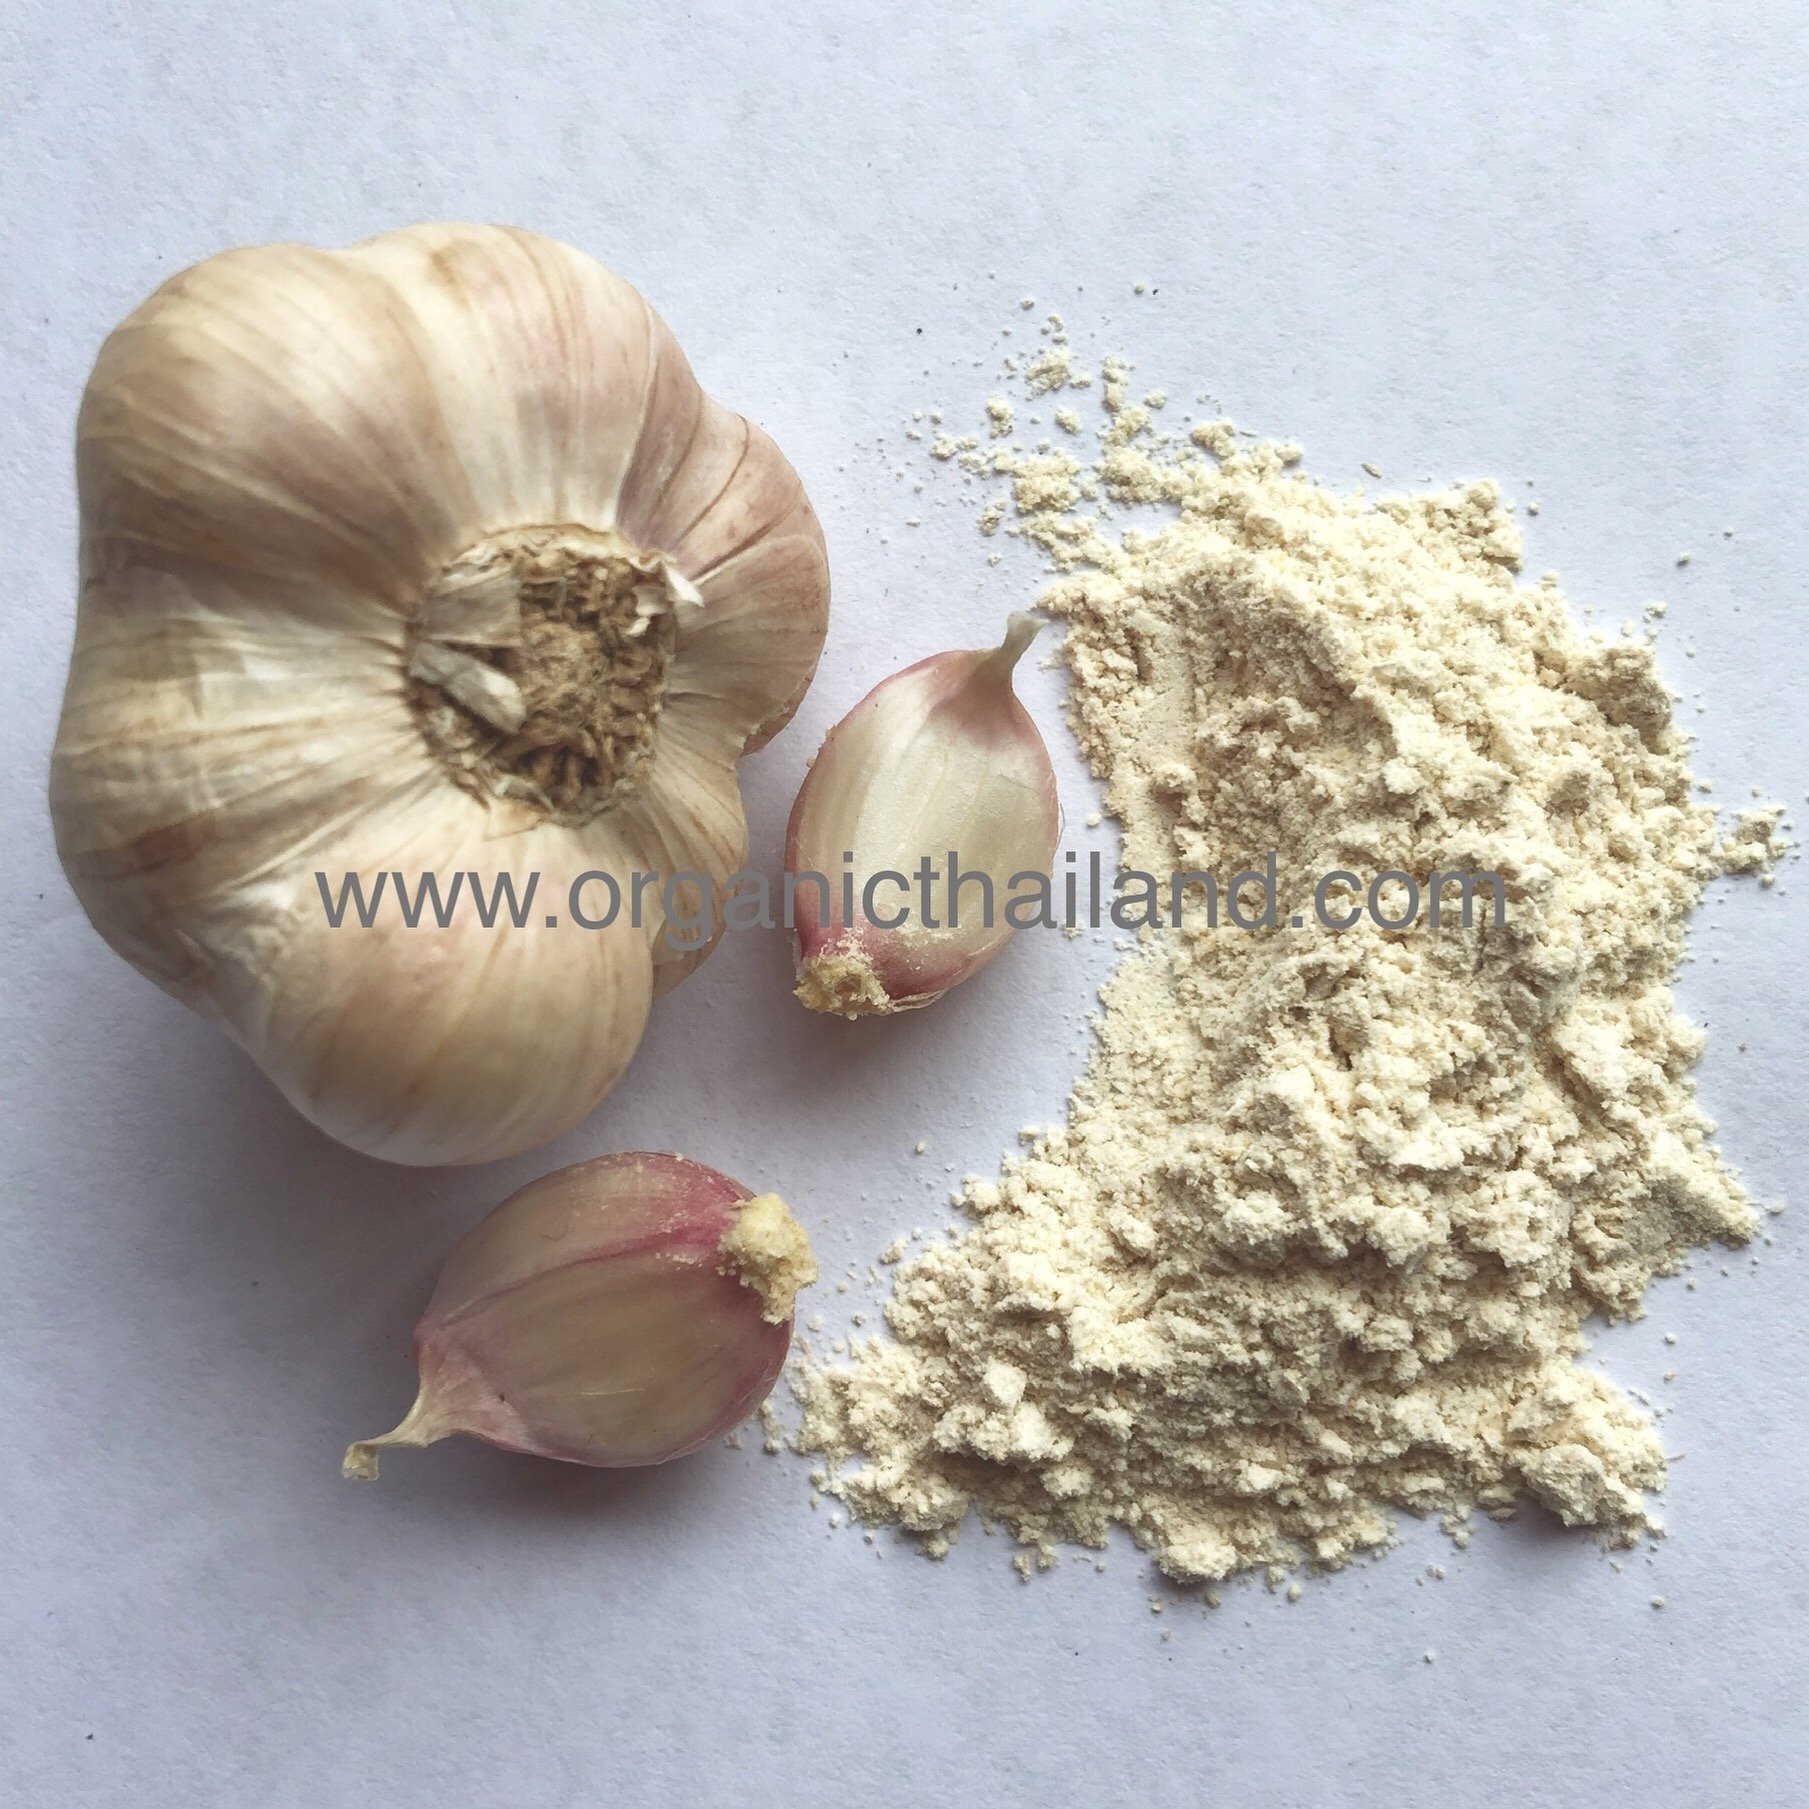 Garlic Powder 1kg